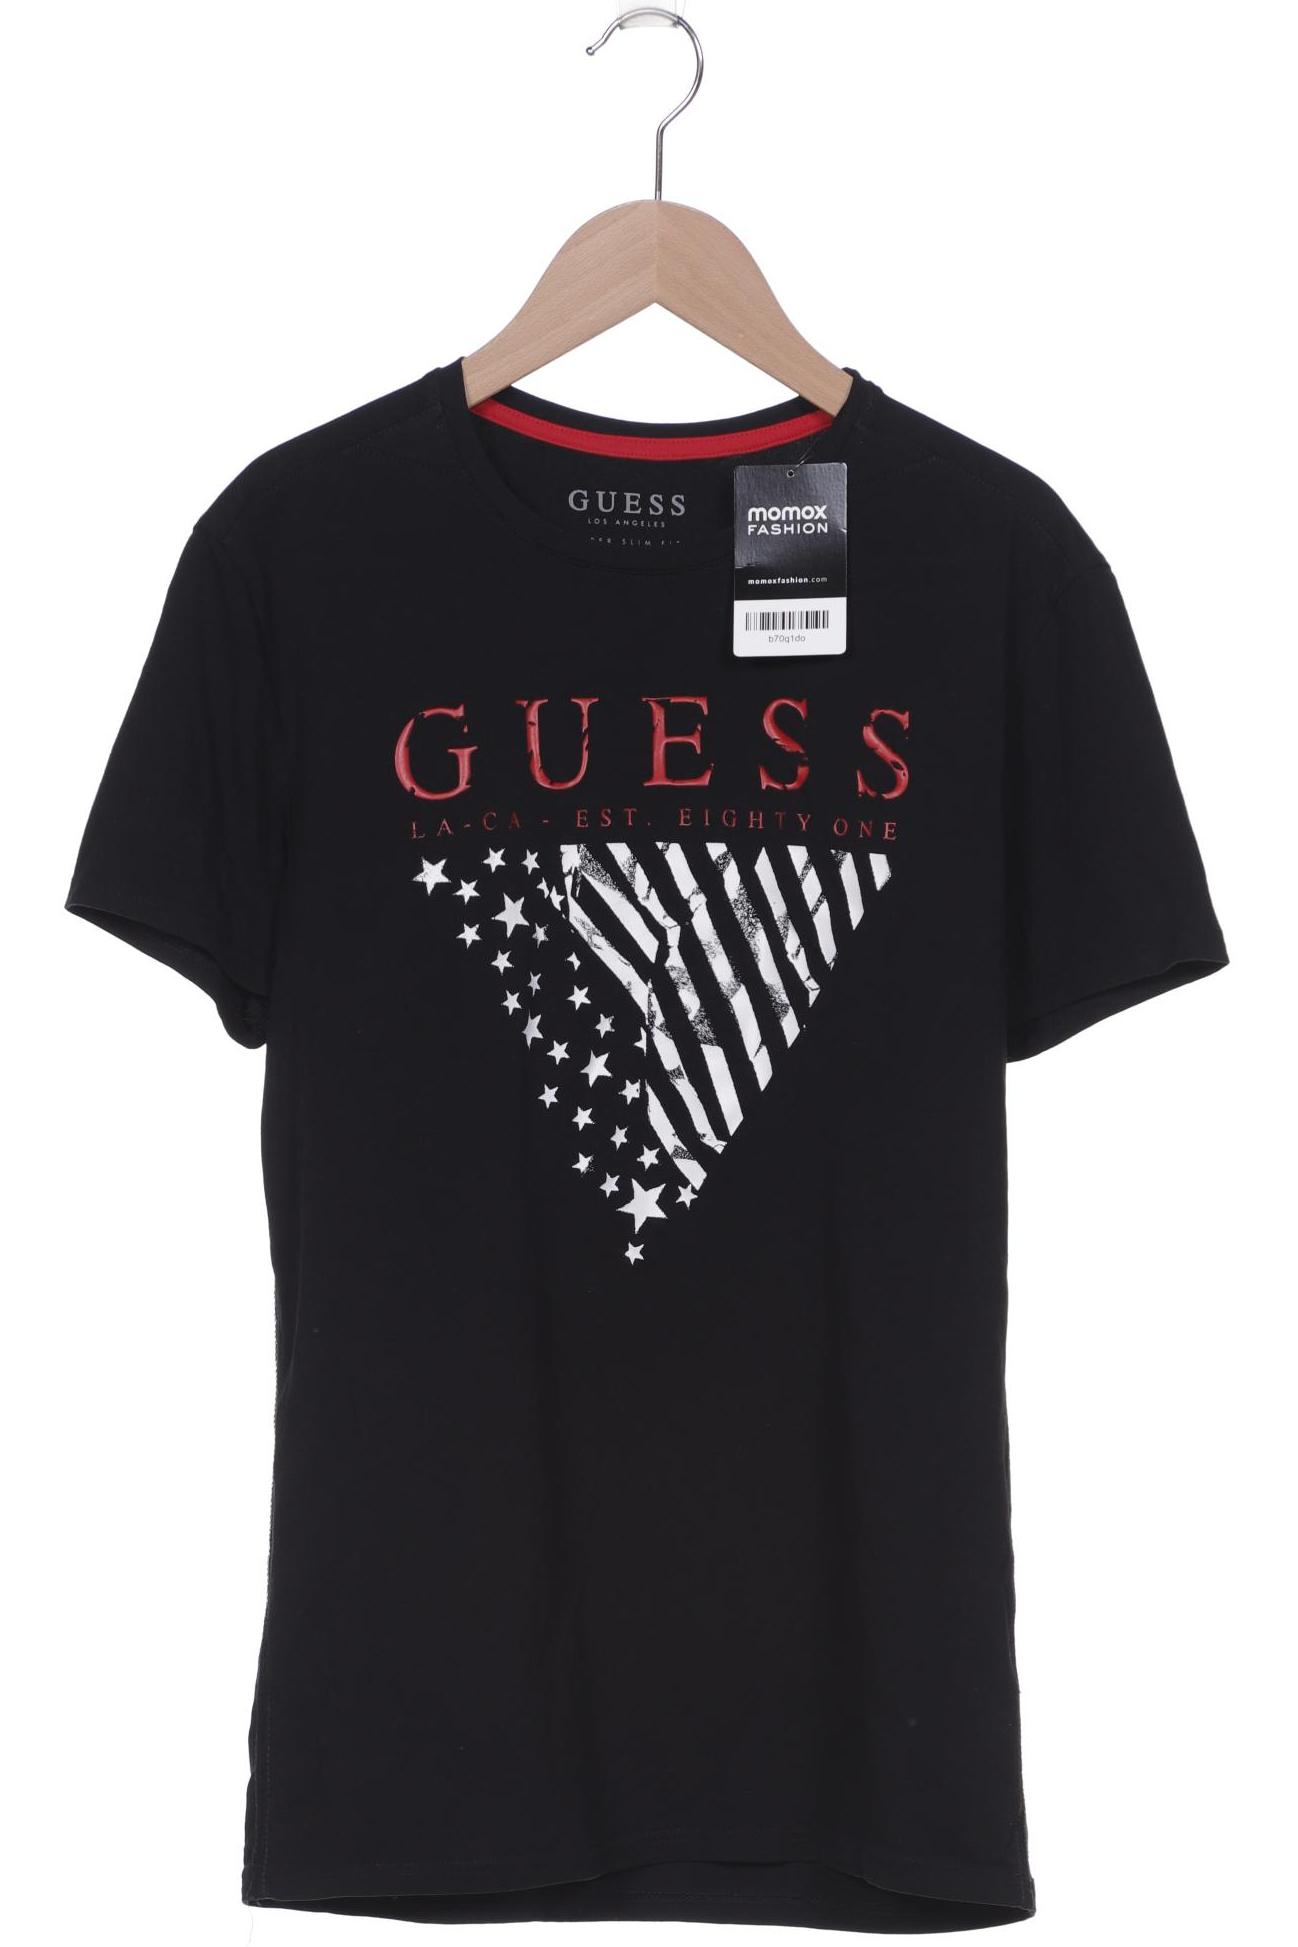 GUESS Herren T-Shirt, schwarz von Guess